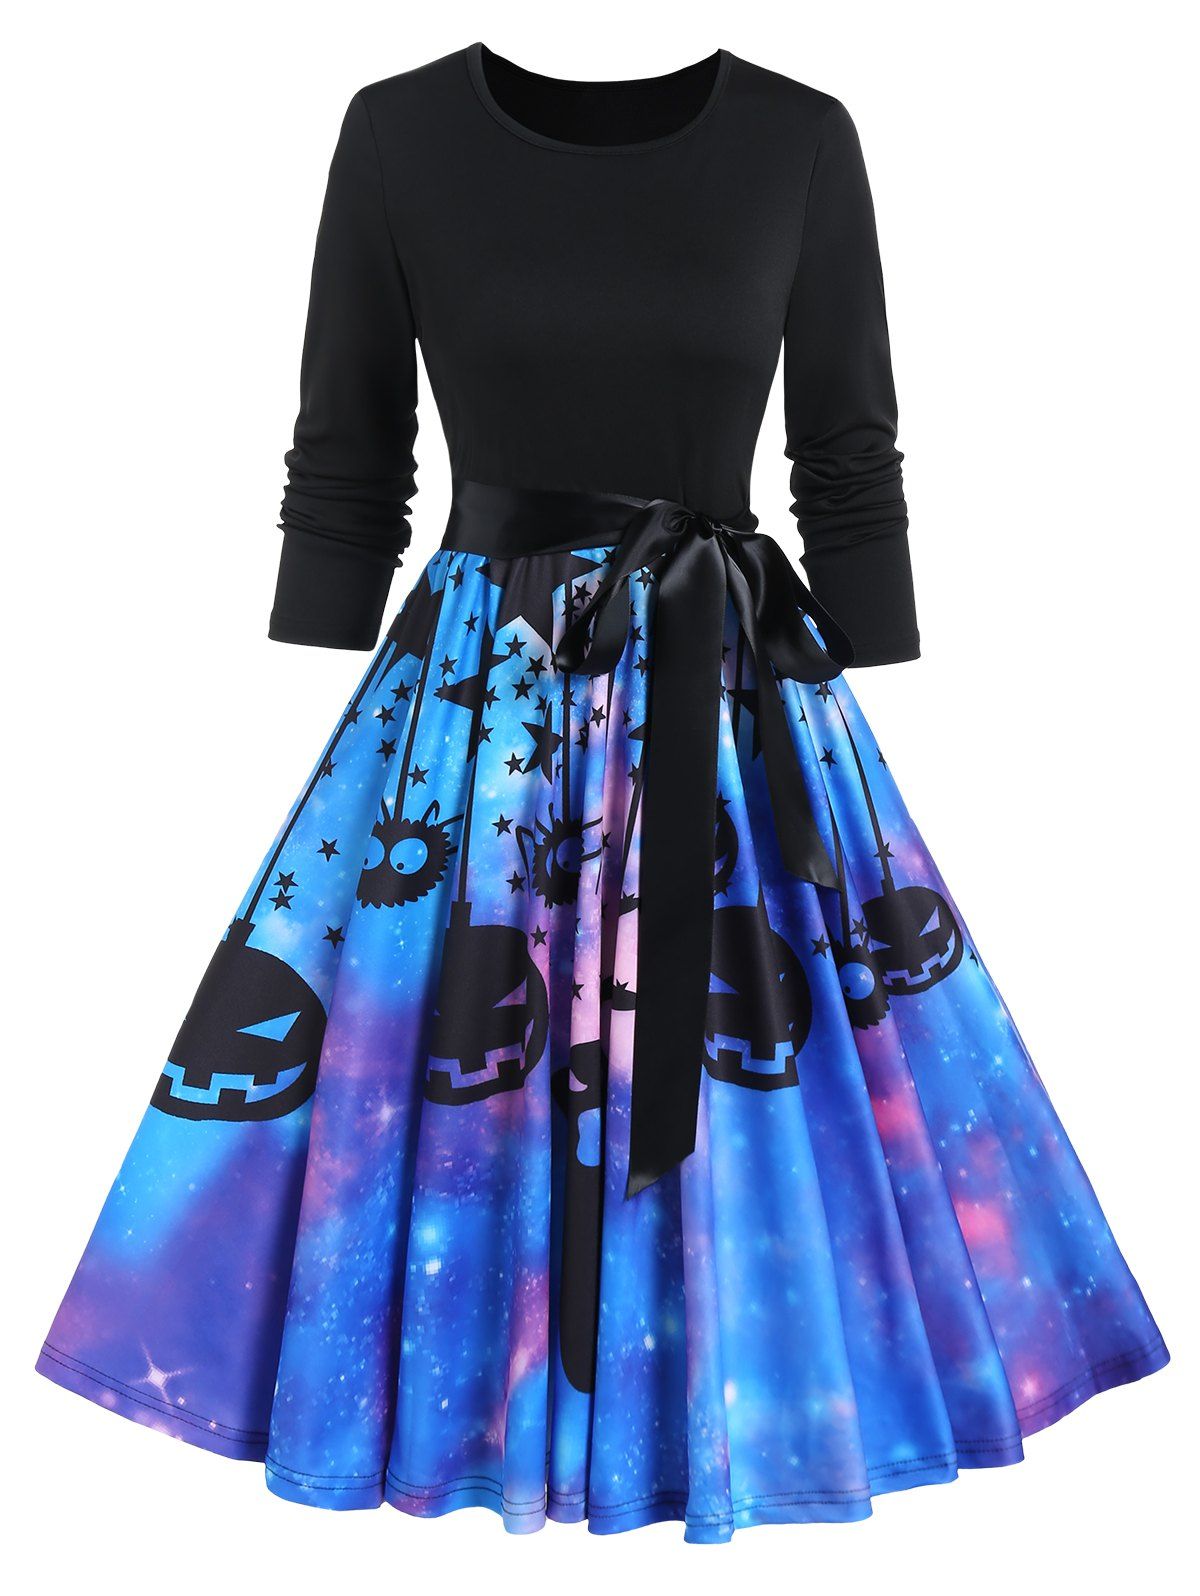 Pumpkin Ghost Star Galaxy Print Halloween Dress Long Sleeve Belted Flare Combo Dress - BLACK XXXL